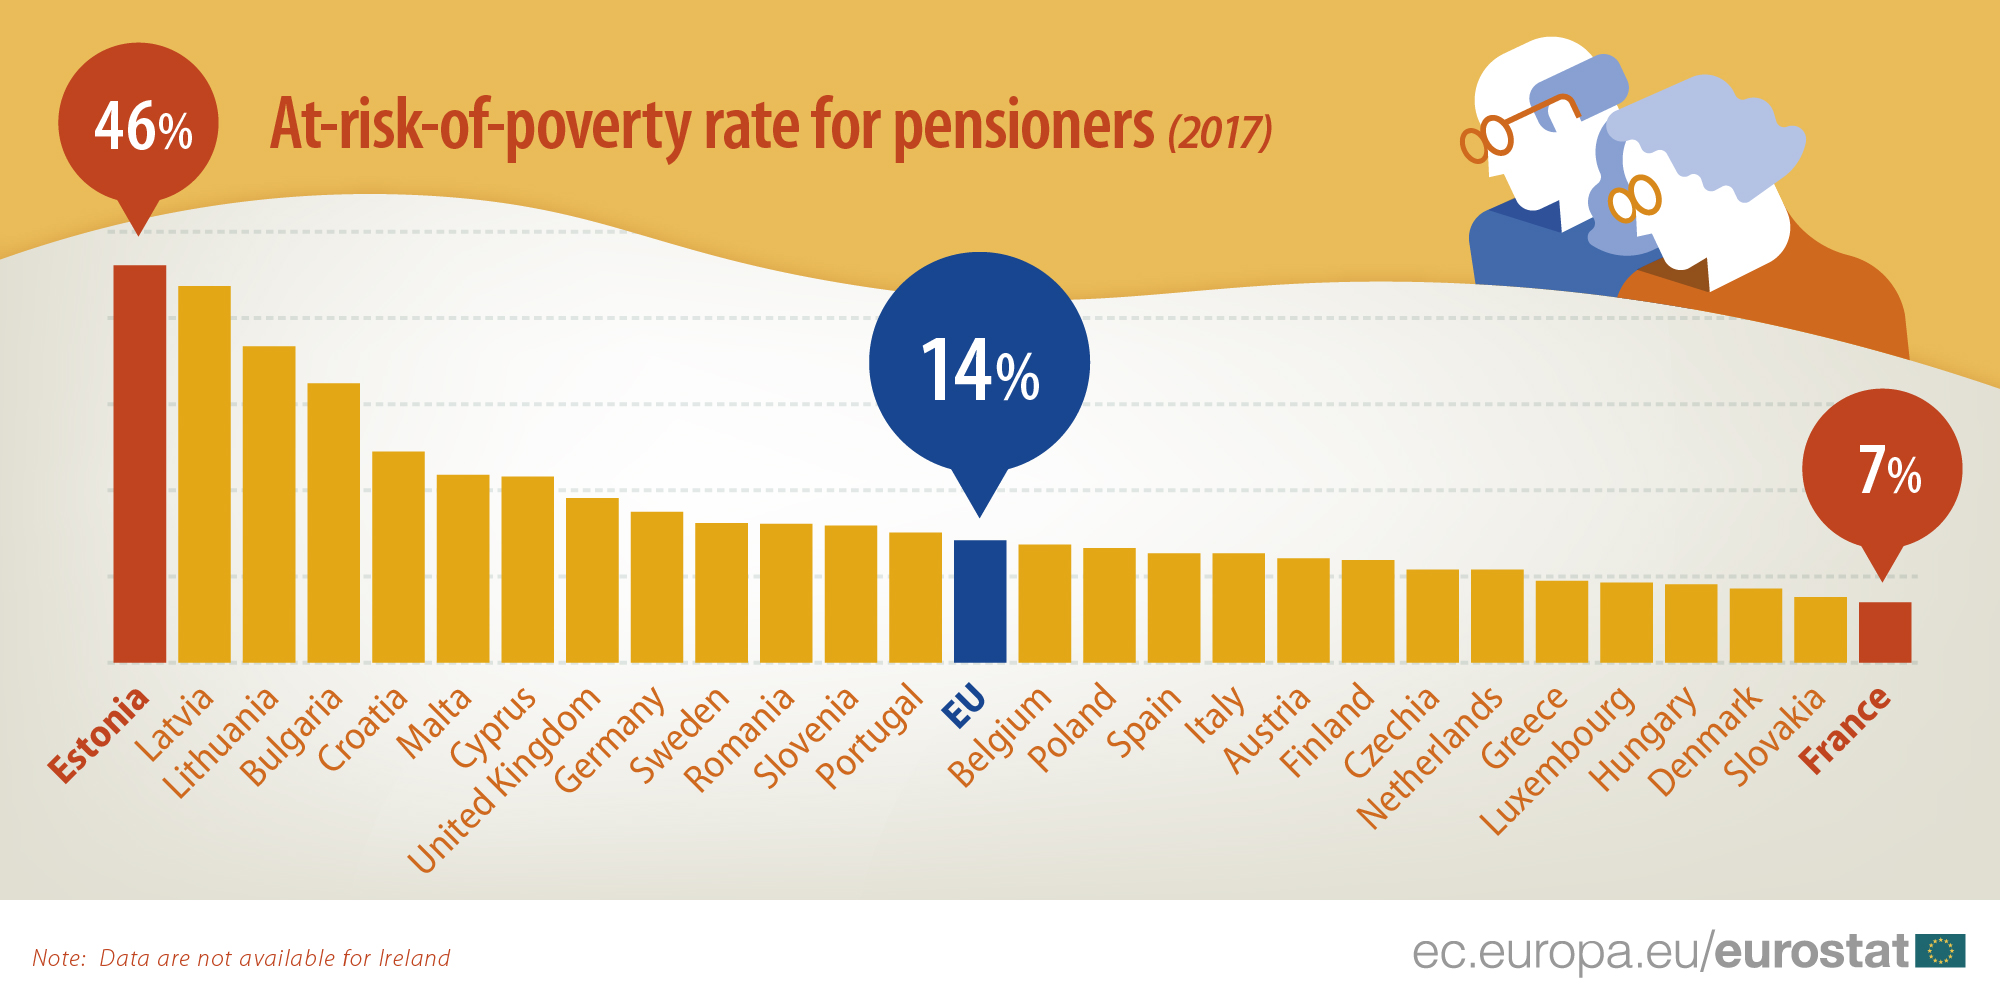 Rizik od siromaštva penzionera u EU u porastu 3